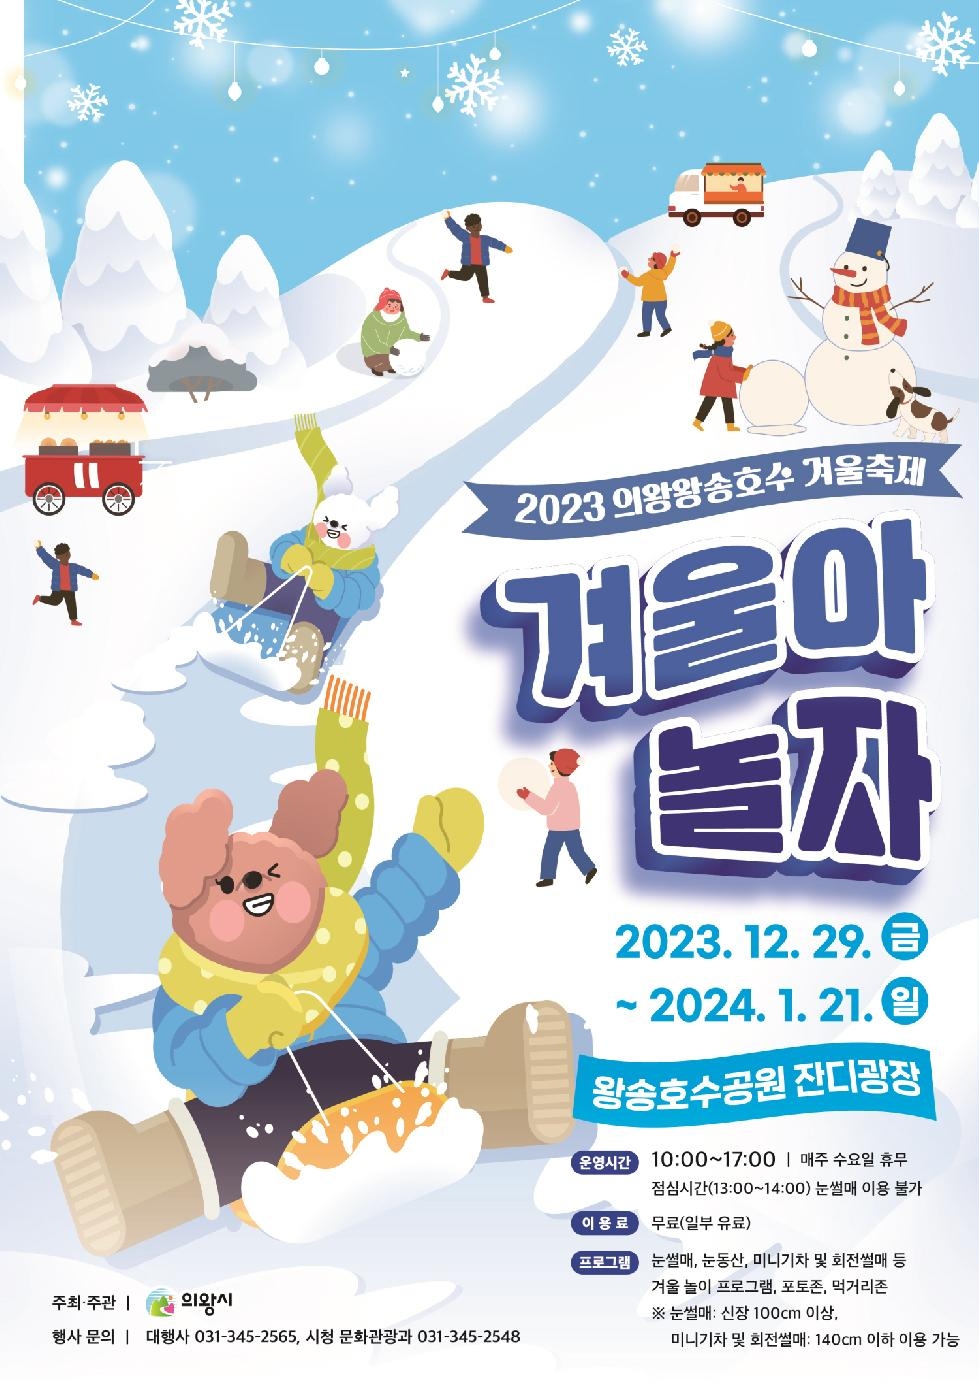 2023 의왕왕송호수 겨울축제 개최